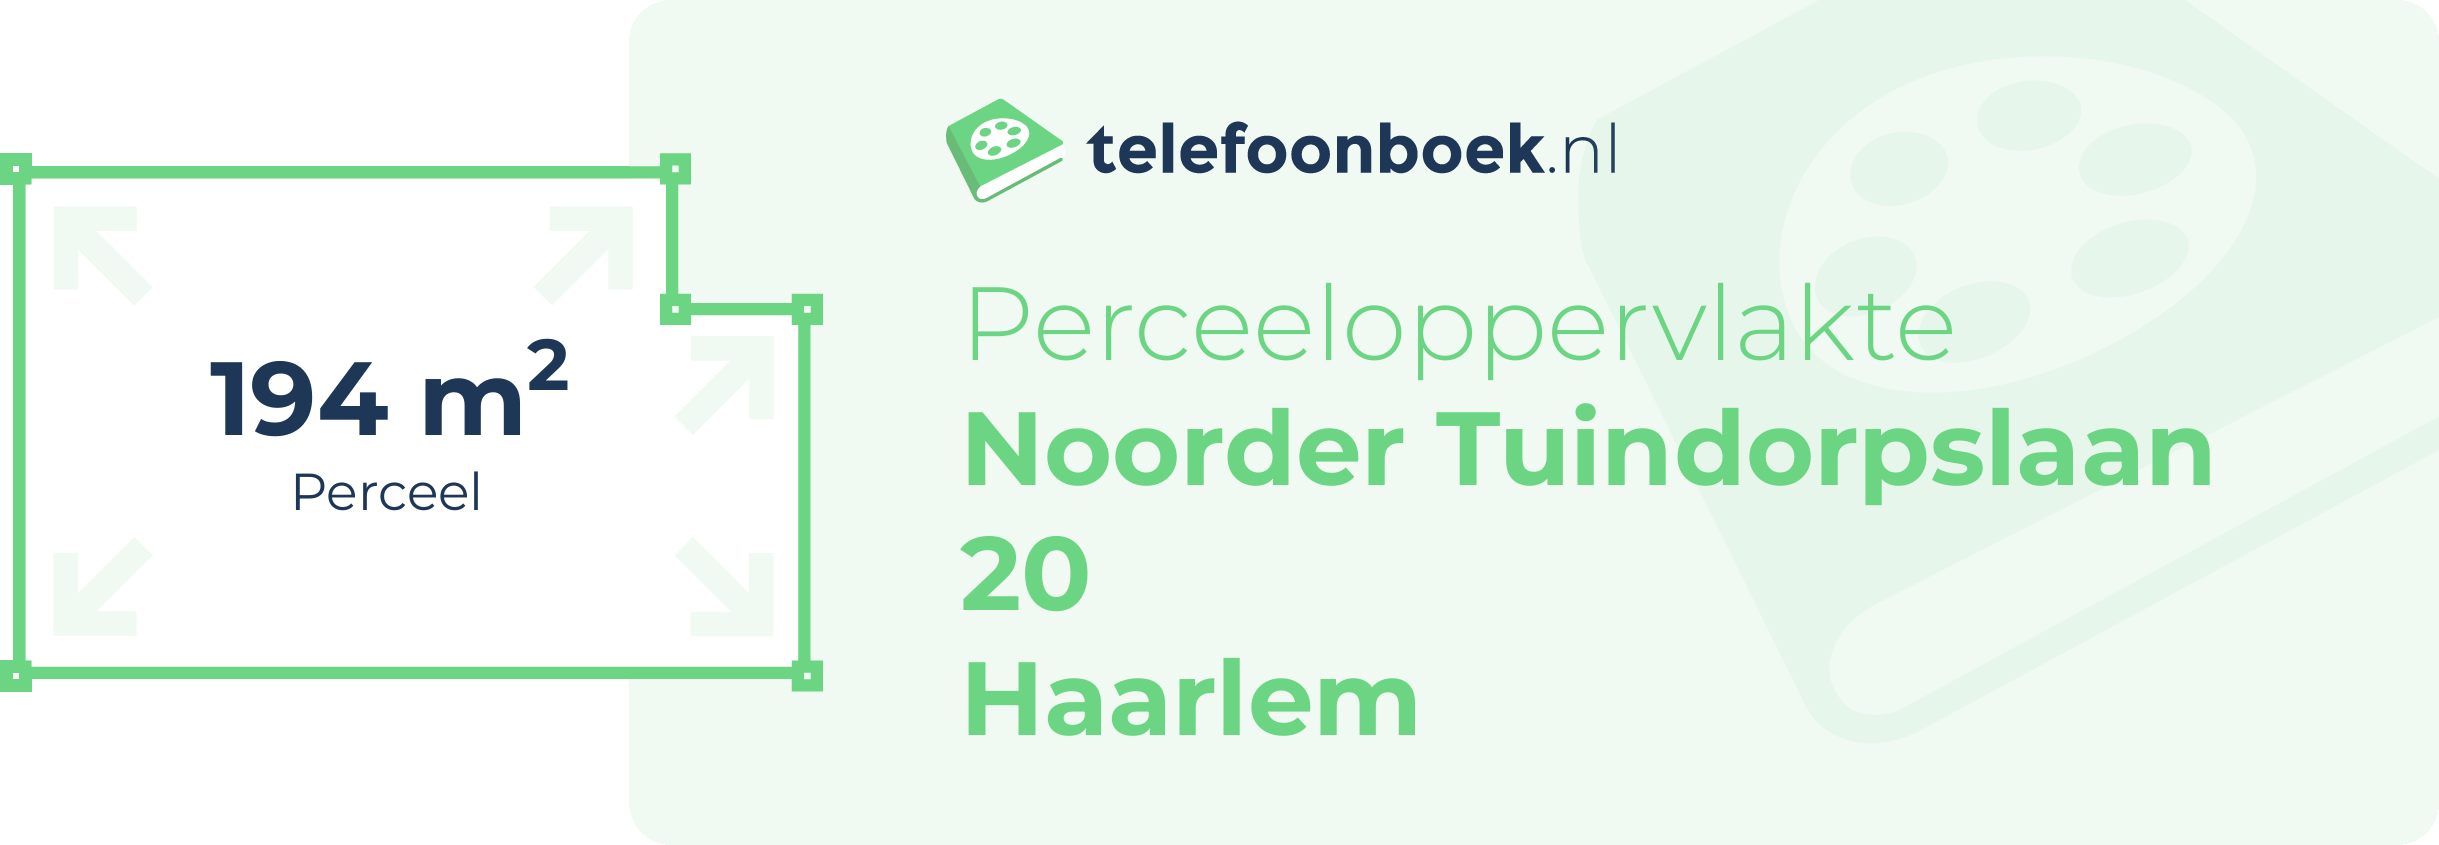 Perceeloppervlakte Noorder Tuindorpslaan 20 Haarlem